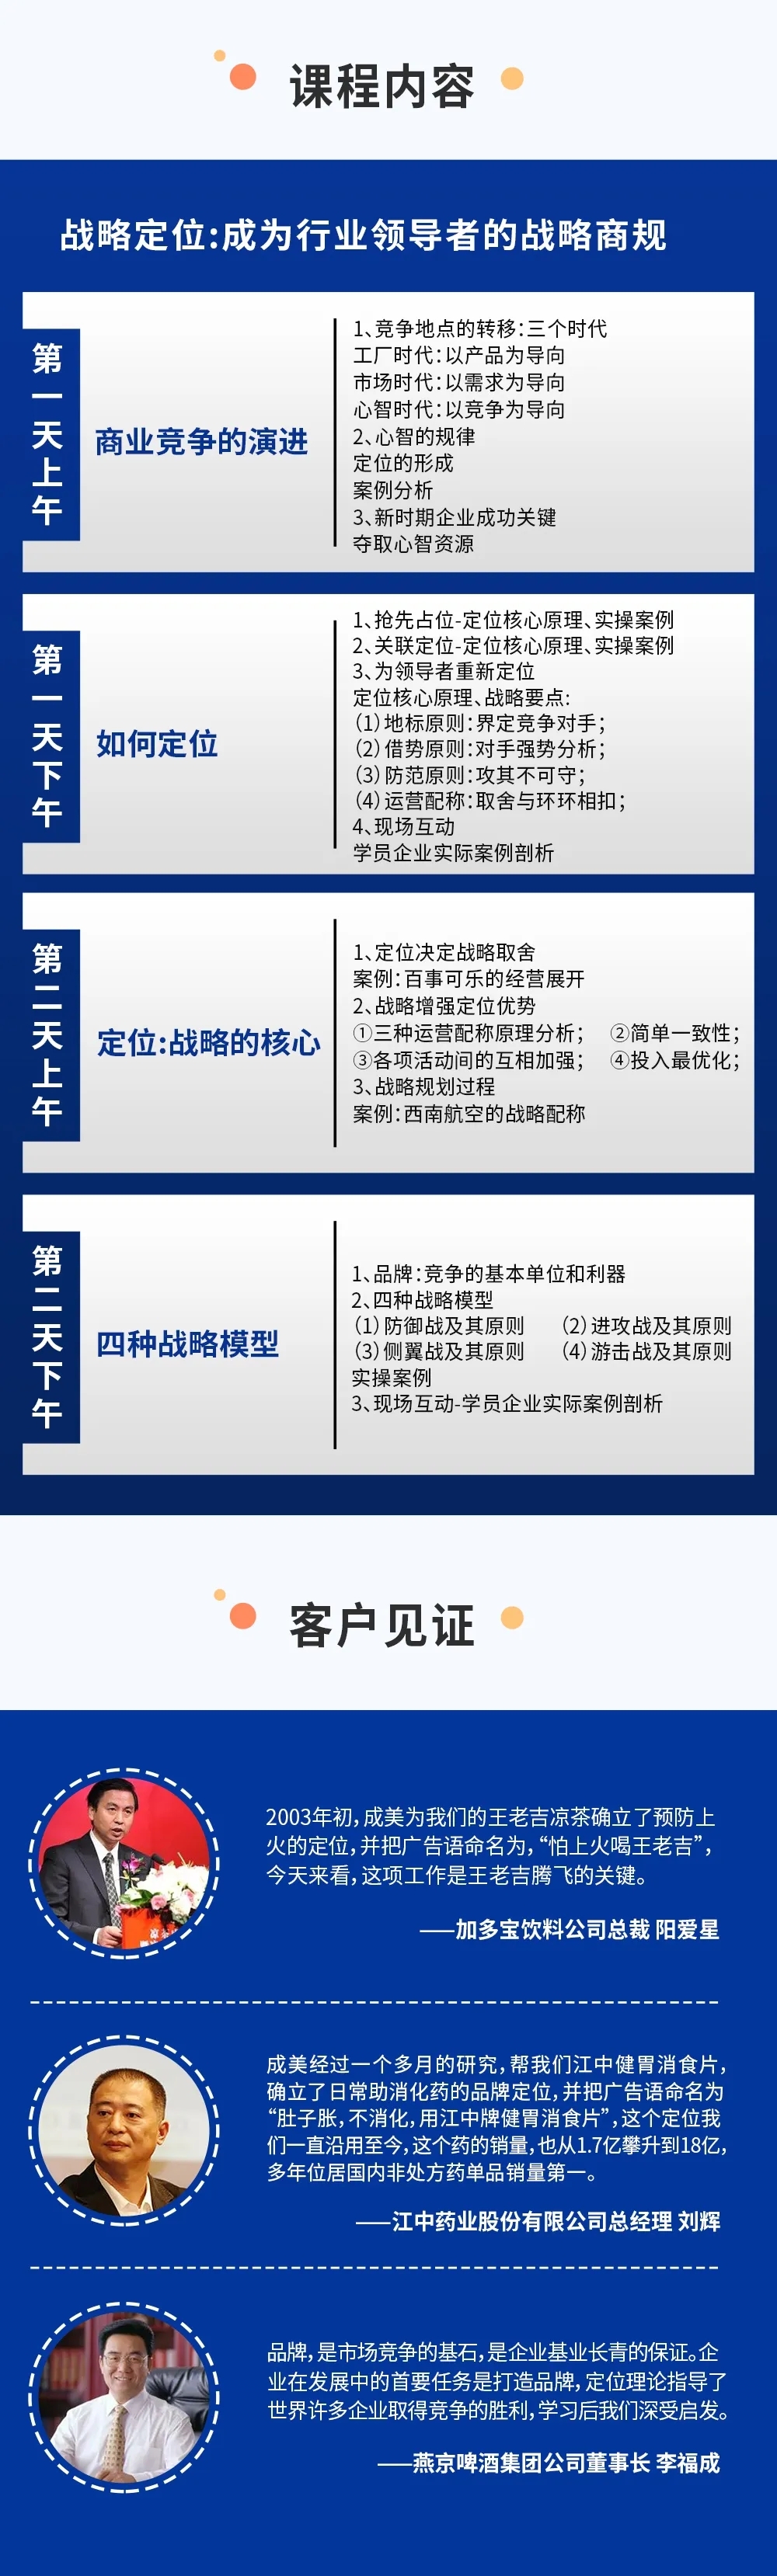 广州市白云化工实业有限公司(图6)